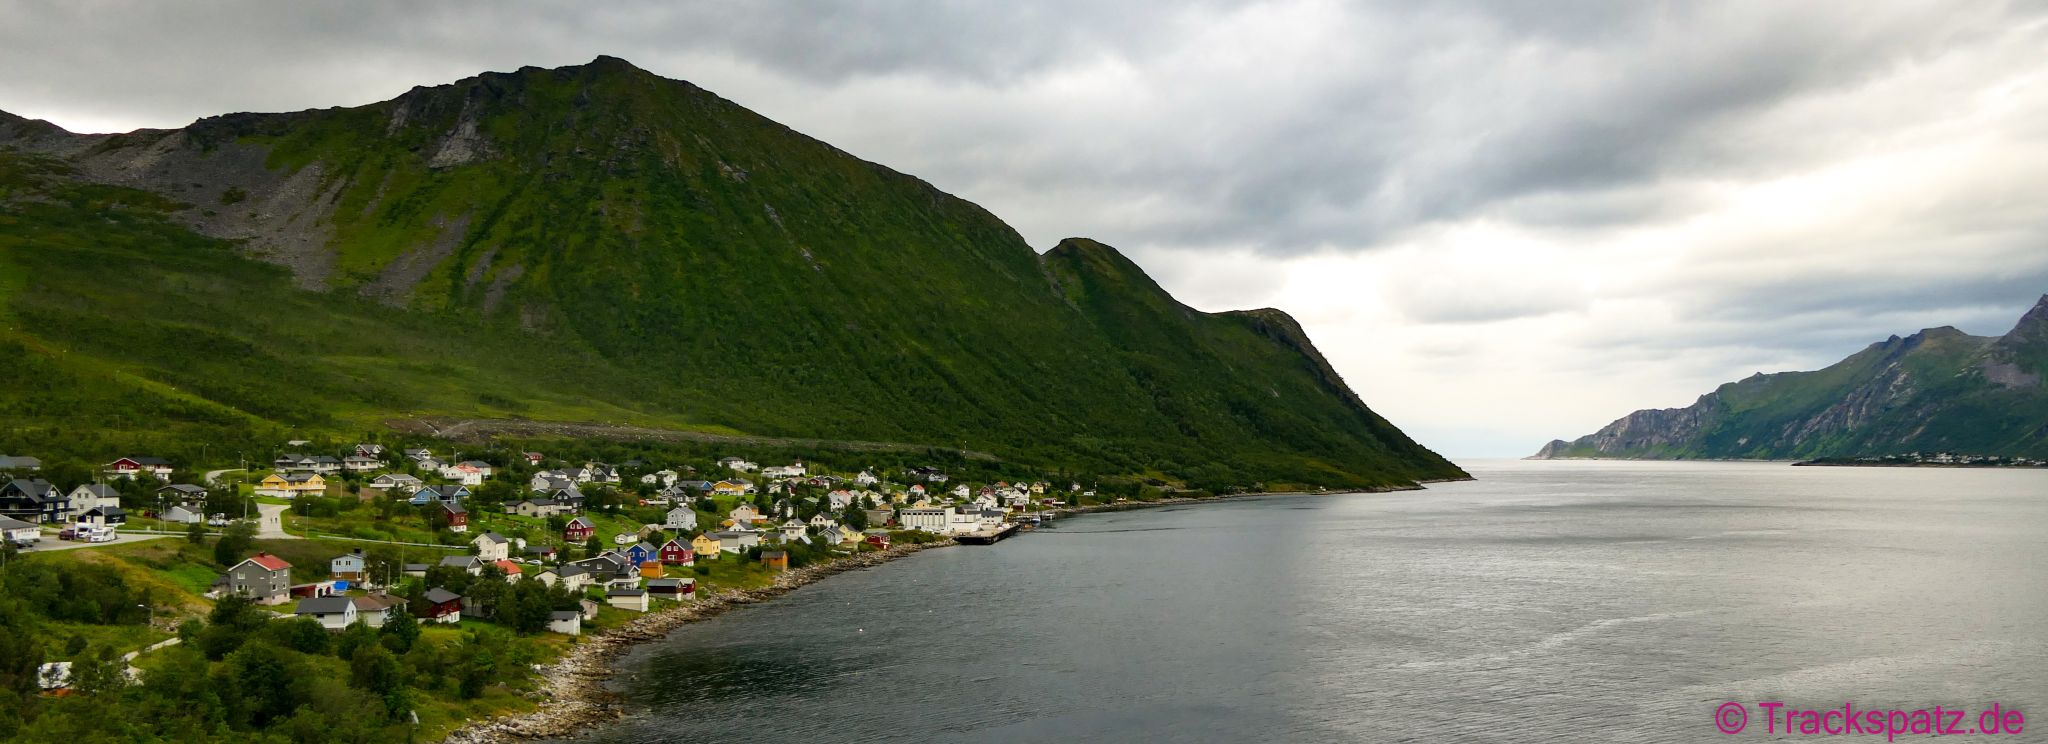 Fjord an Fjord - Ort an Ort mit bunten Häusern - eins schöner als das nächste...